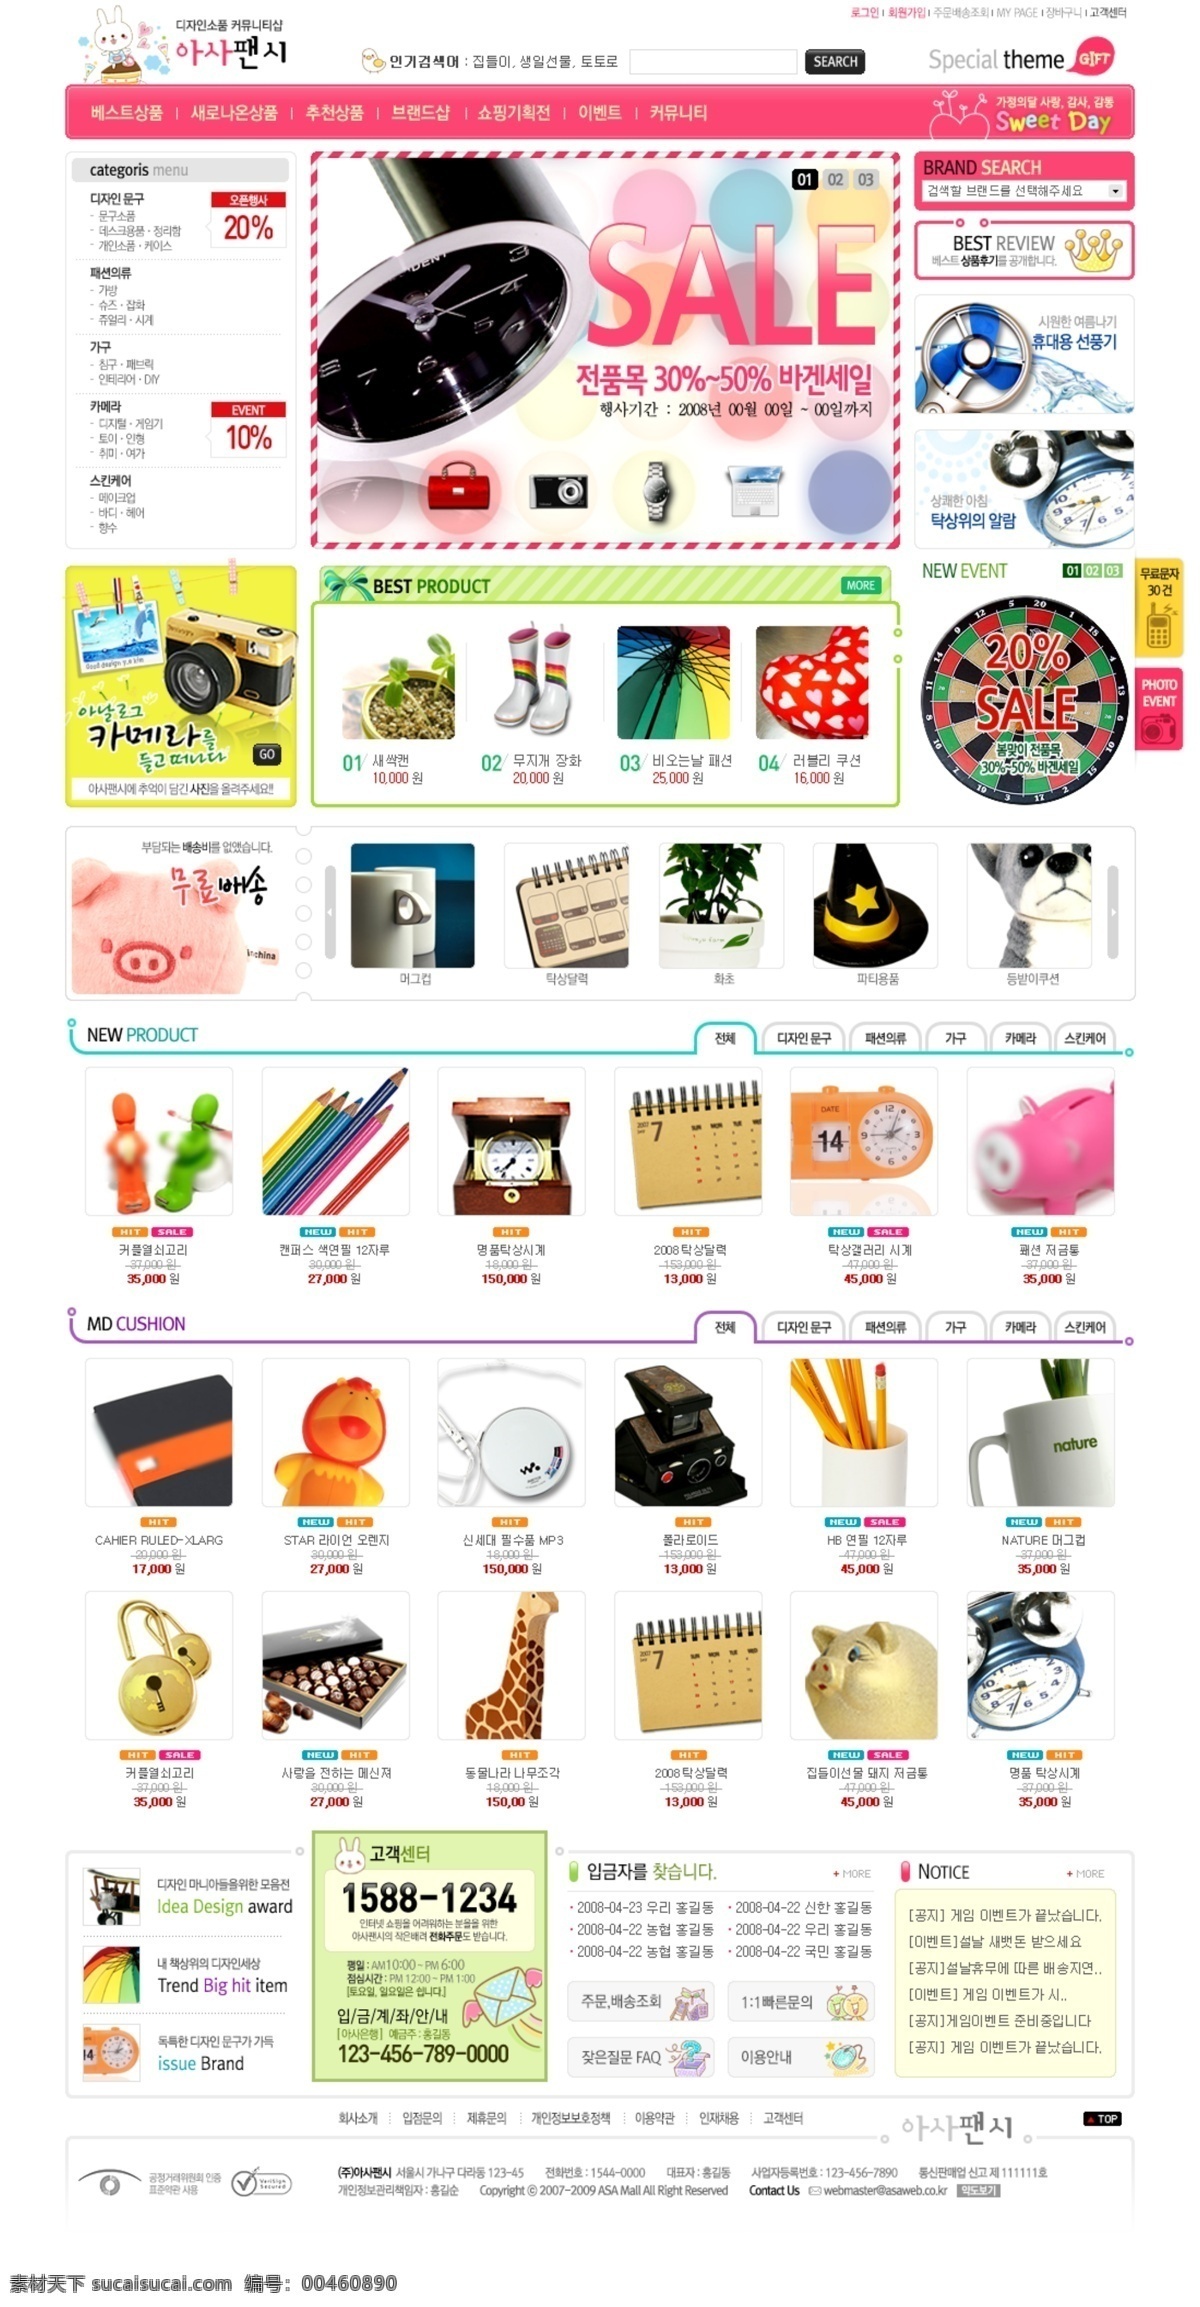 文具 饰品 商城 网页模板 韩国风格 粉色色调 网页素材